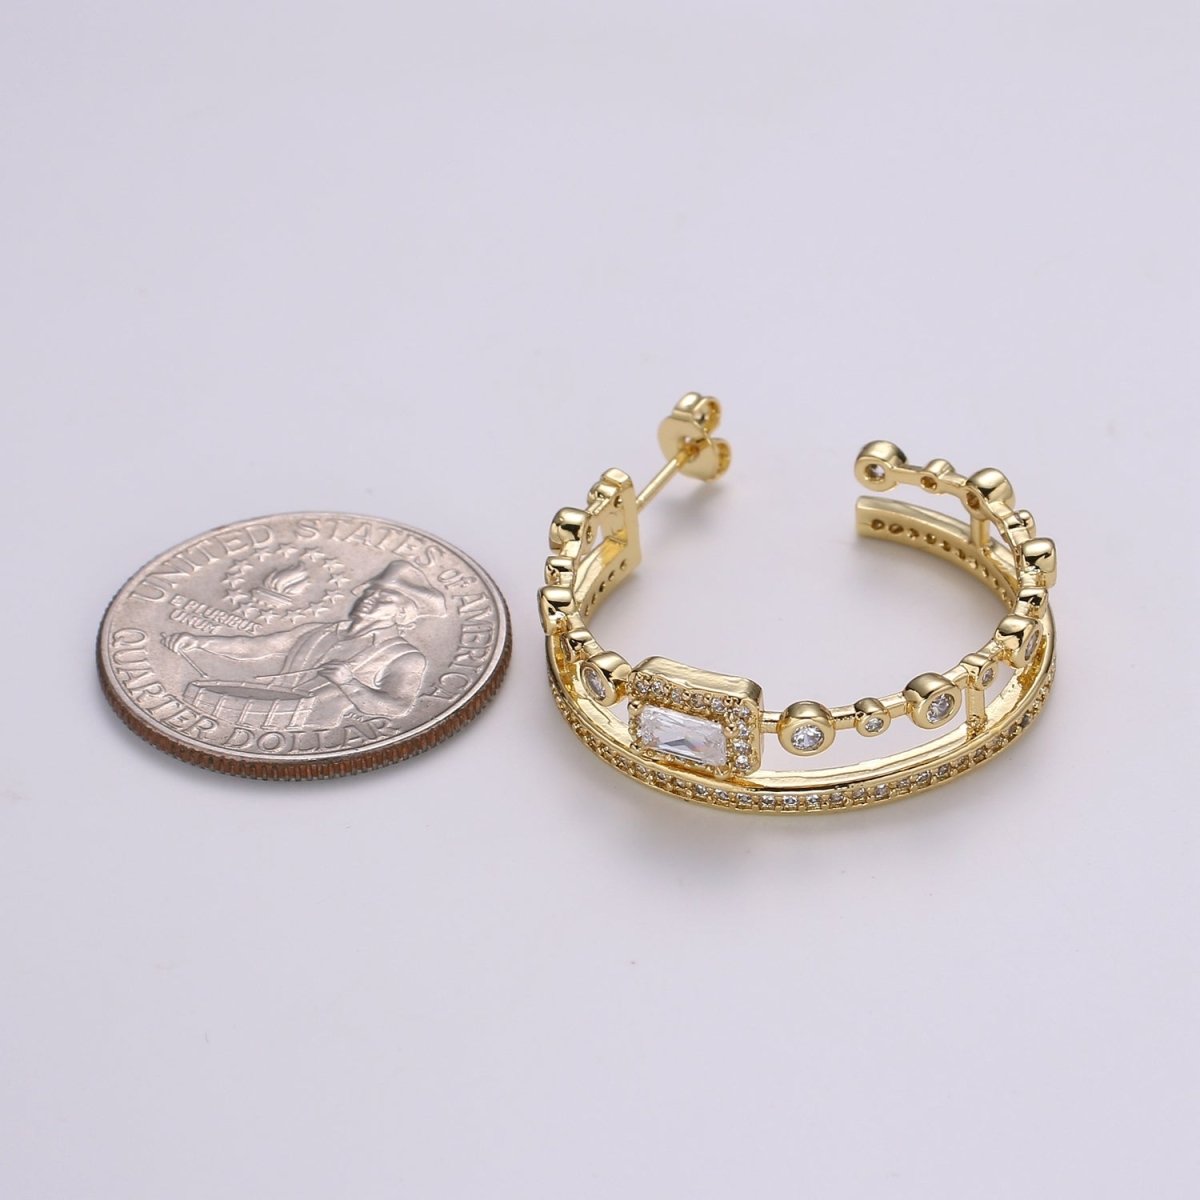 24K Gold Hoop Earring - Mismatched Hoop Earring - Geometric Cz hoop earring for women - Large Hoop 30MM Earring gift idea P-057 - DLUXCA